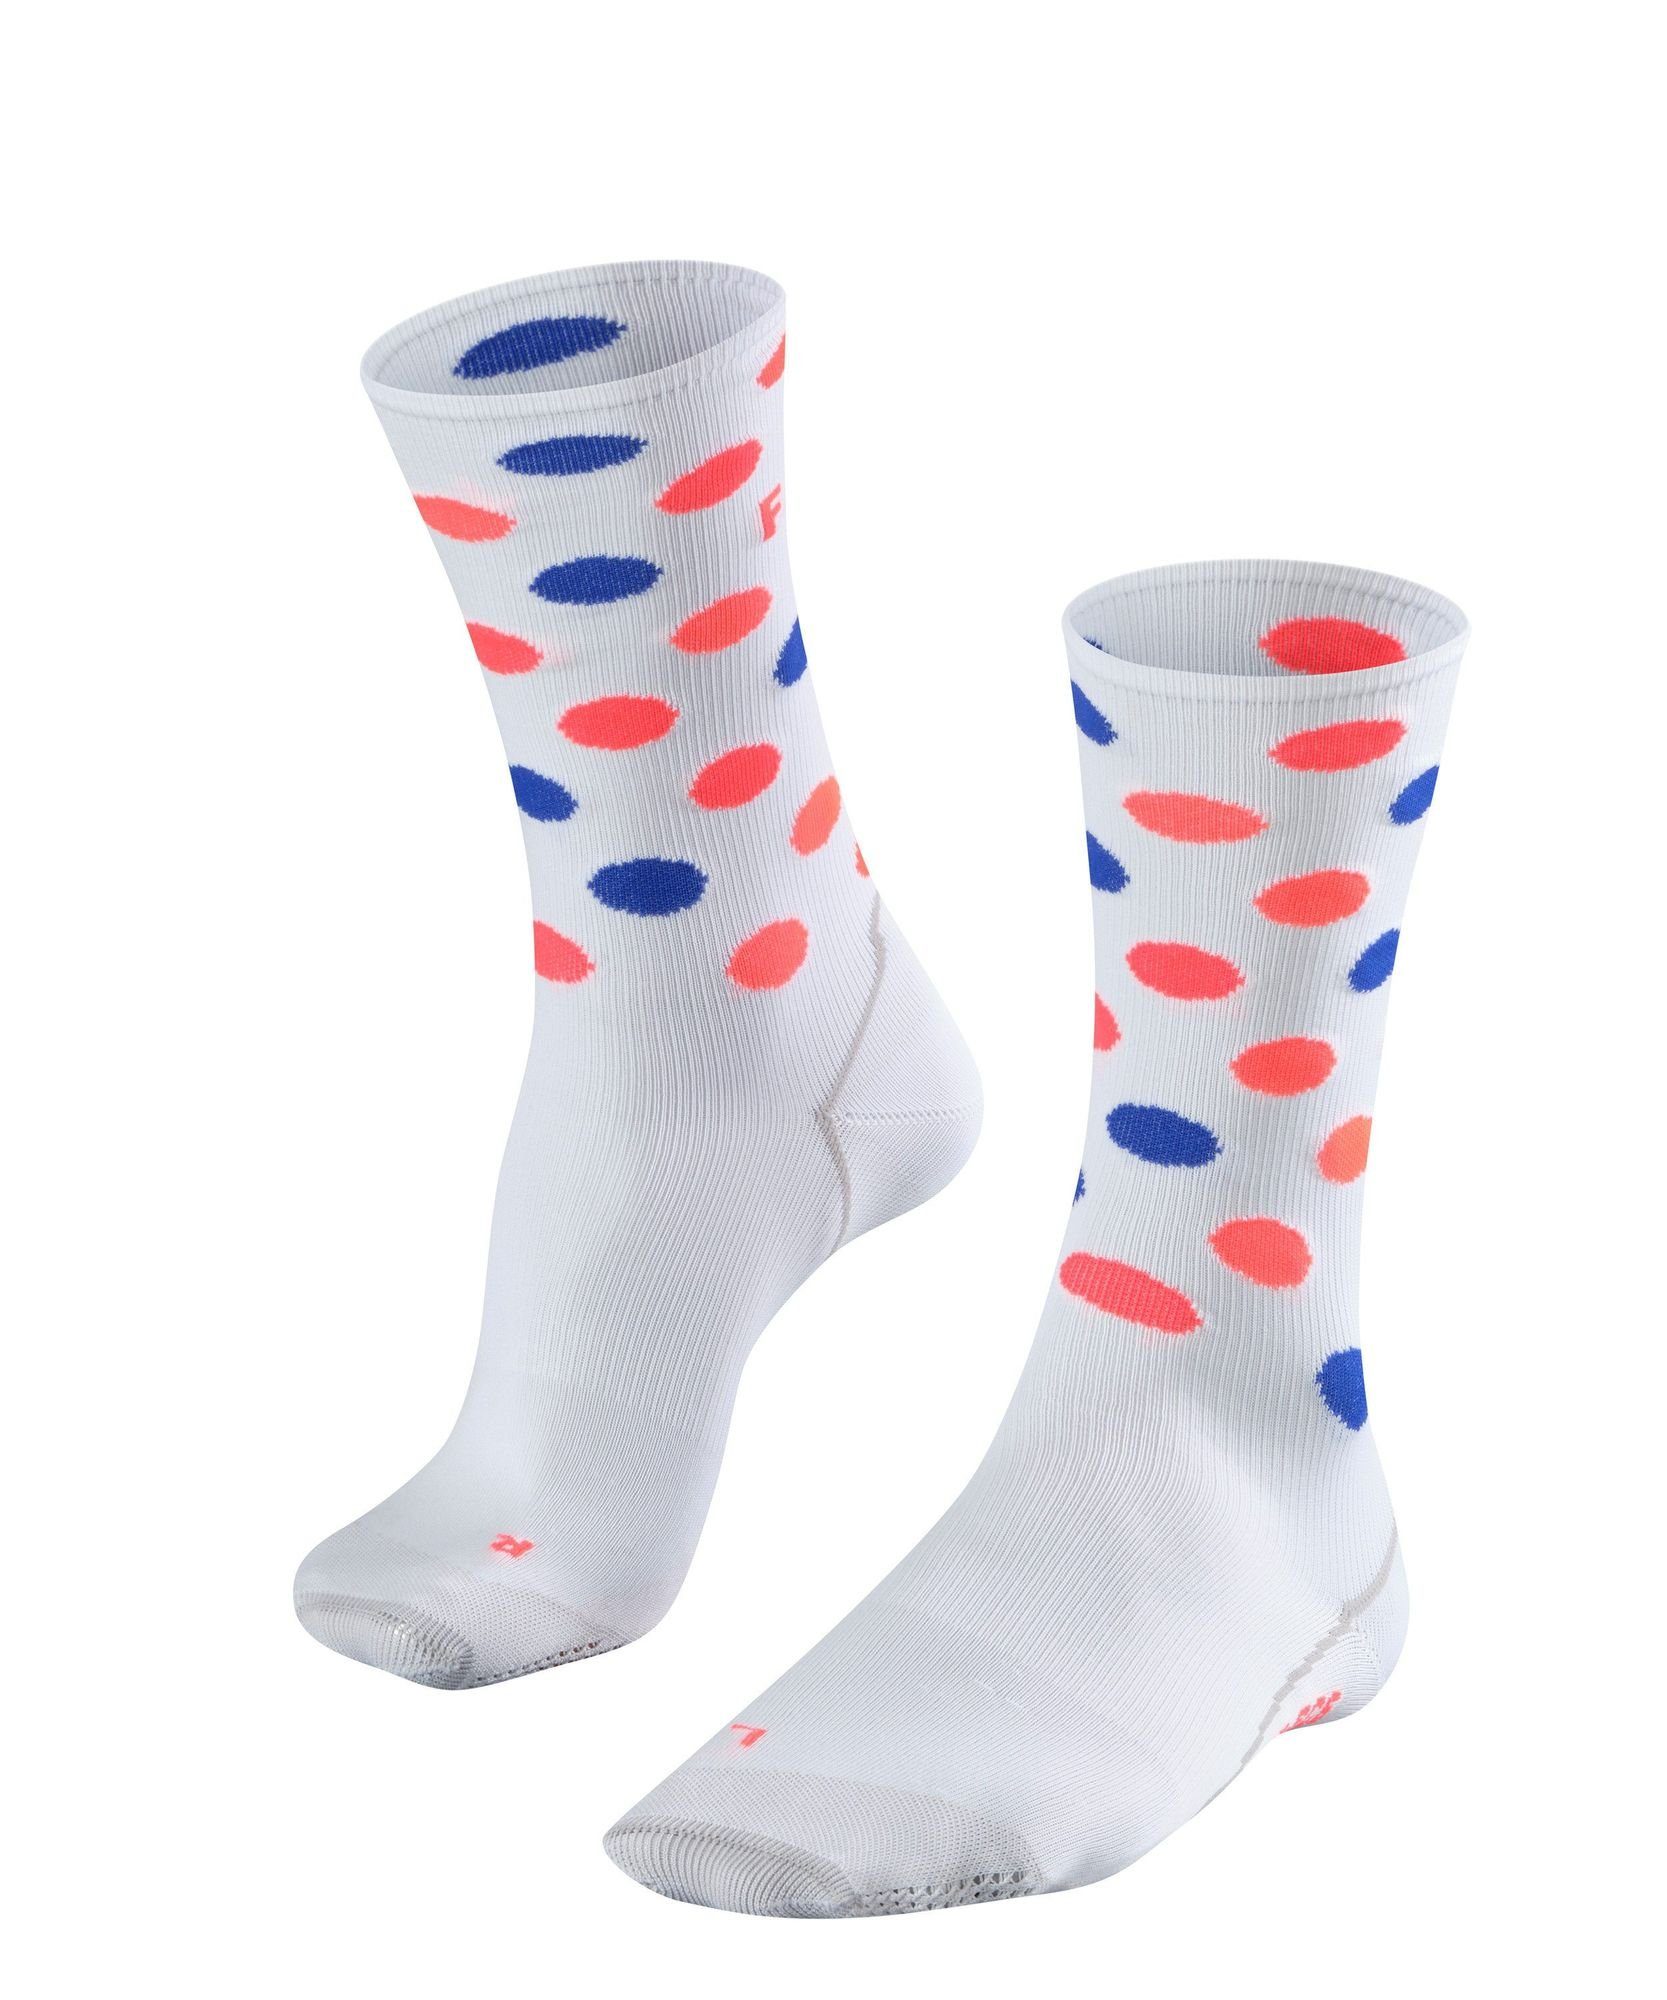 FALKE Socken Falke BC Impulse Dots weiss-blau-rot Socken Unisex